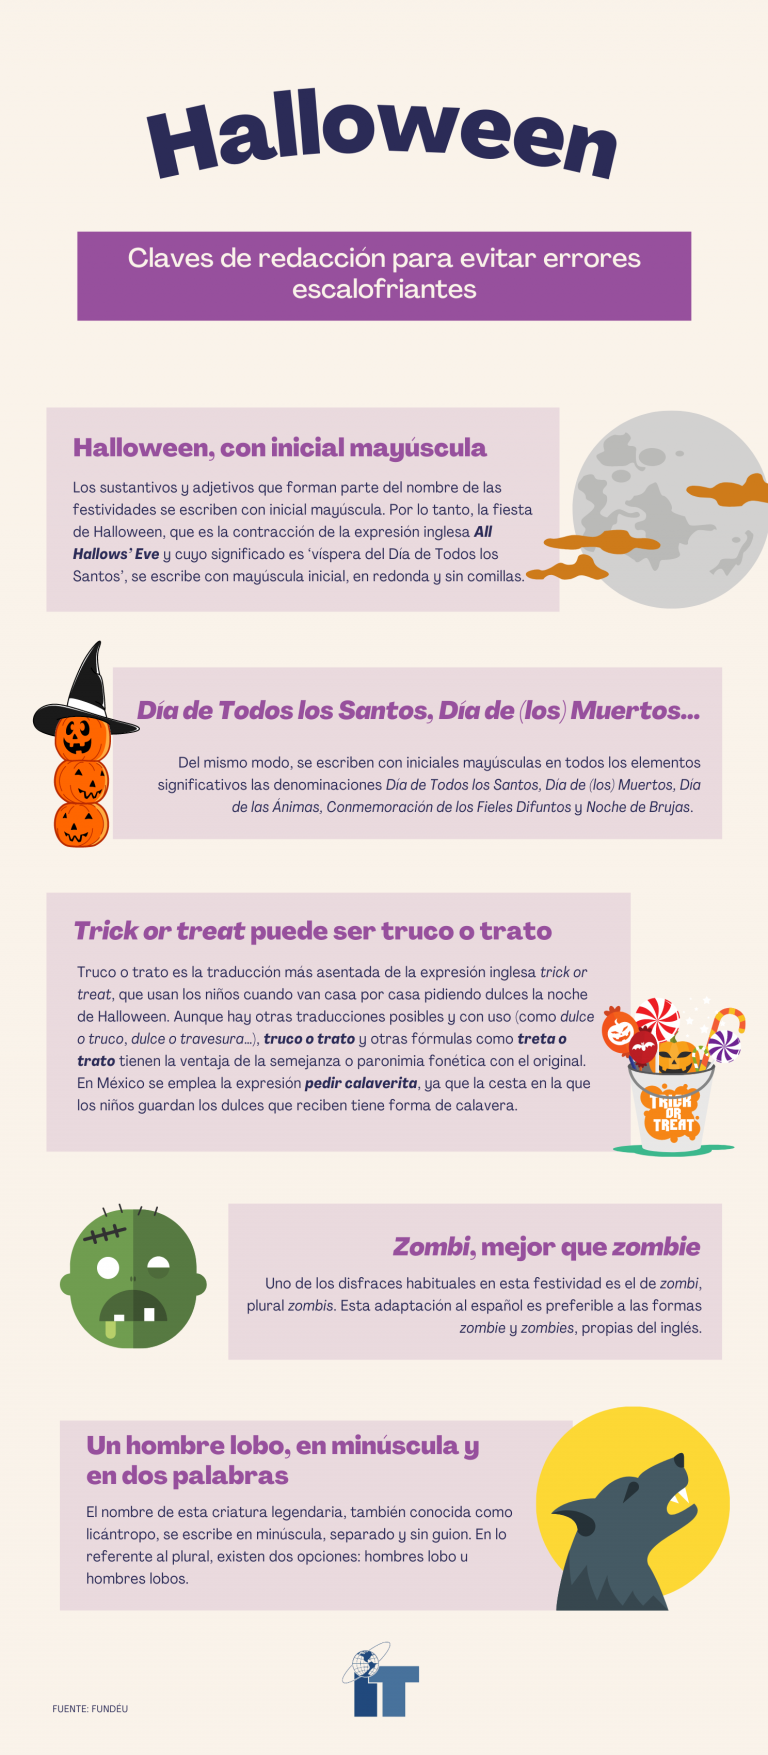 infografía sobre las claves de redacción para Halloween